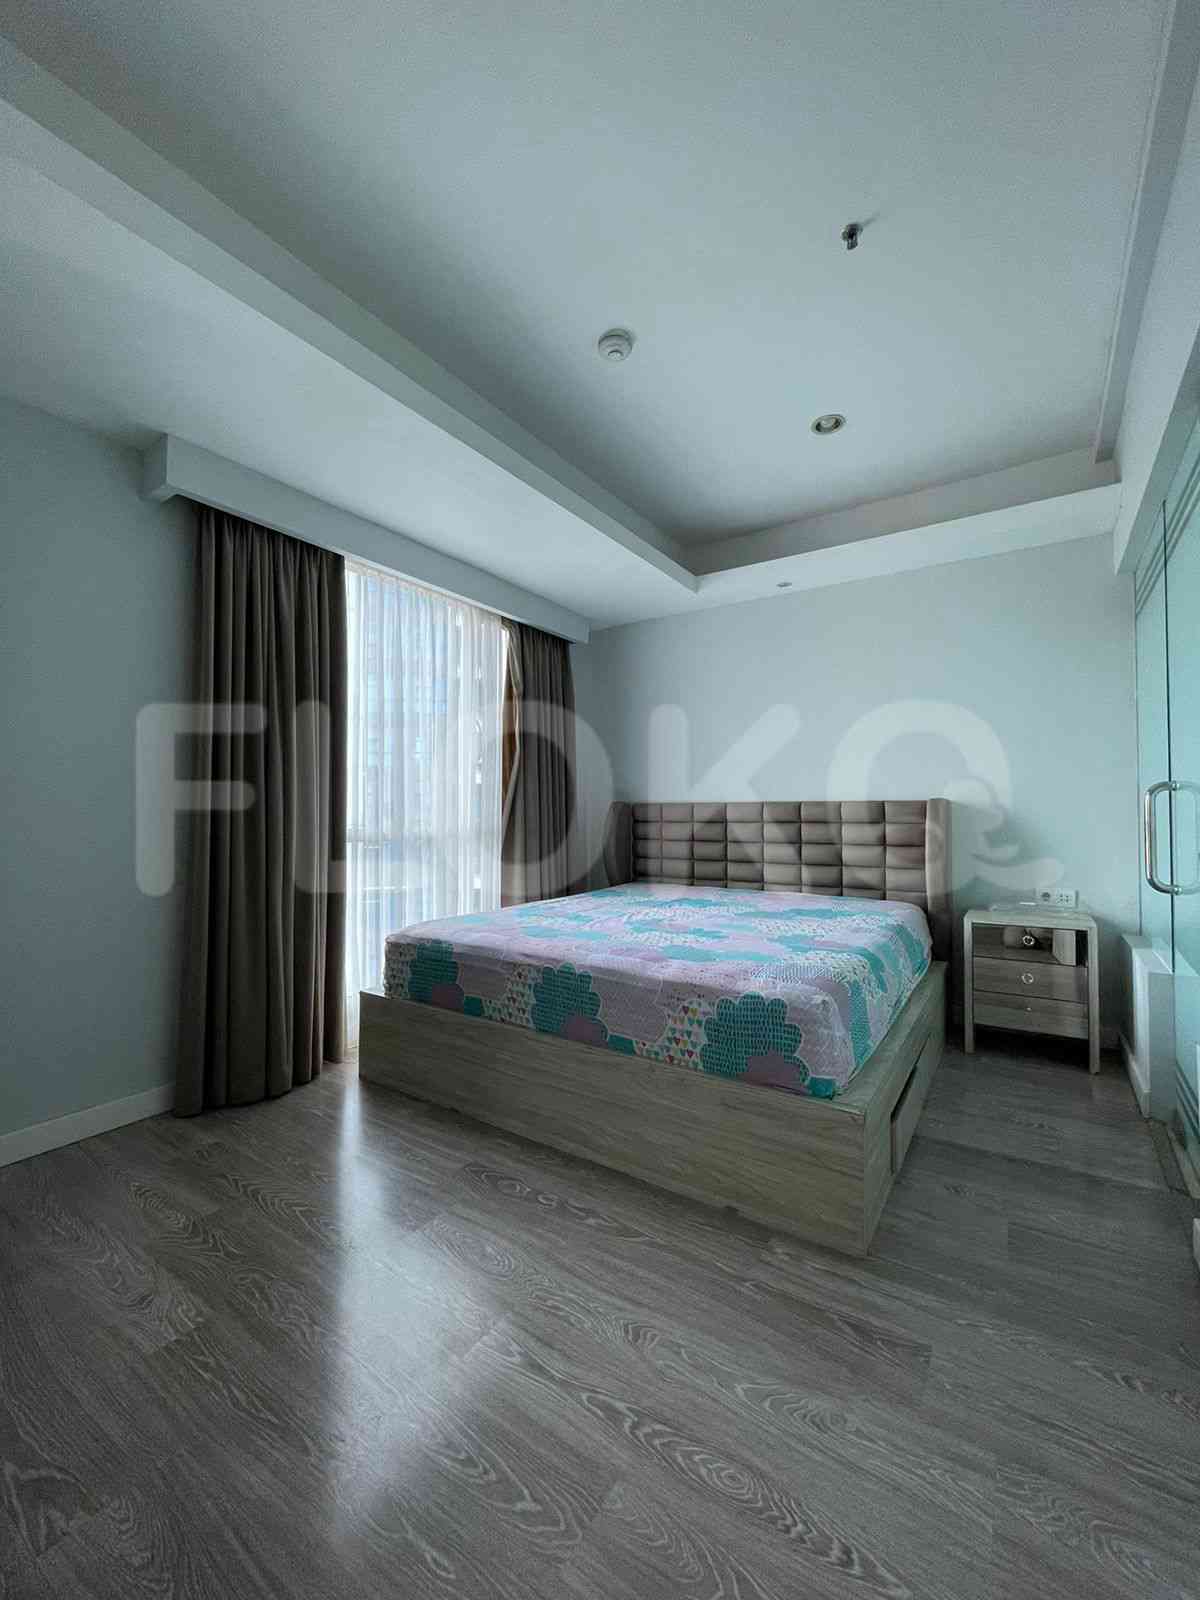 3 Bedroom on 5th Floor for Rent in Casa Grande - fte1f1 4